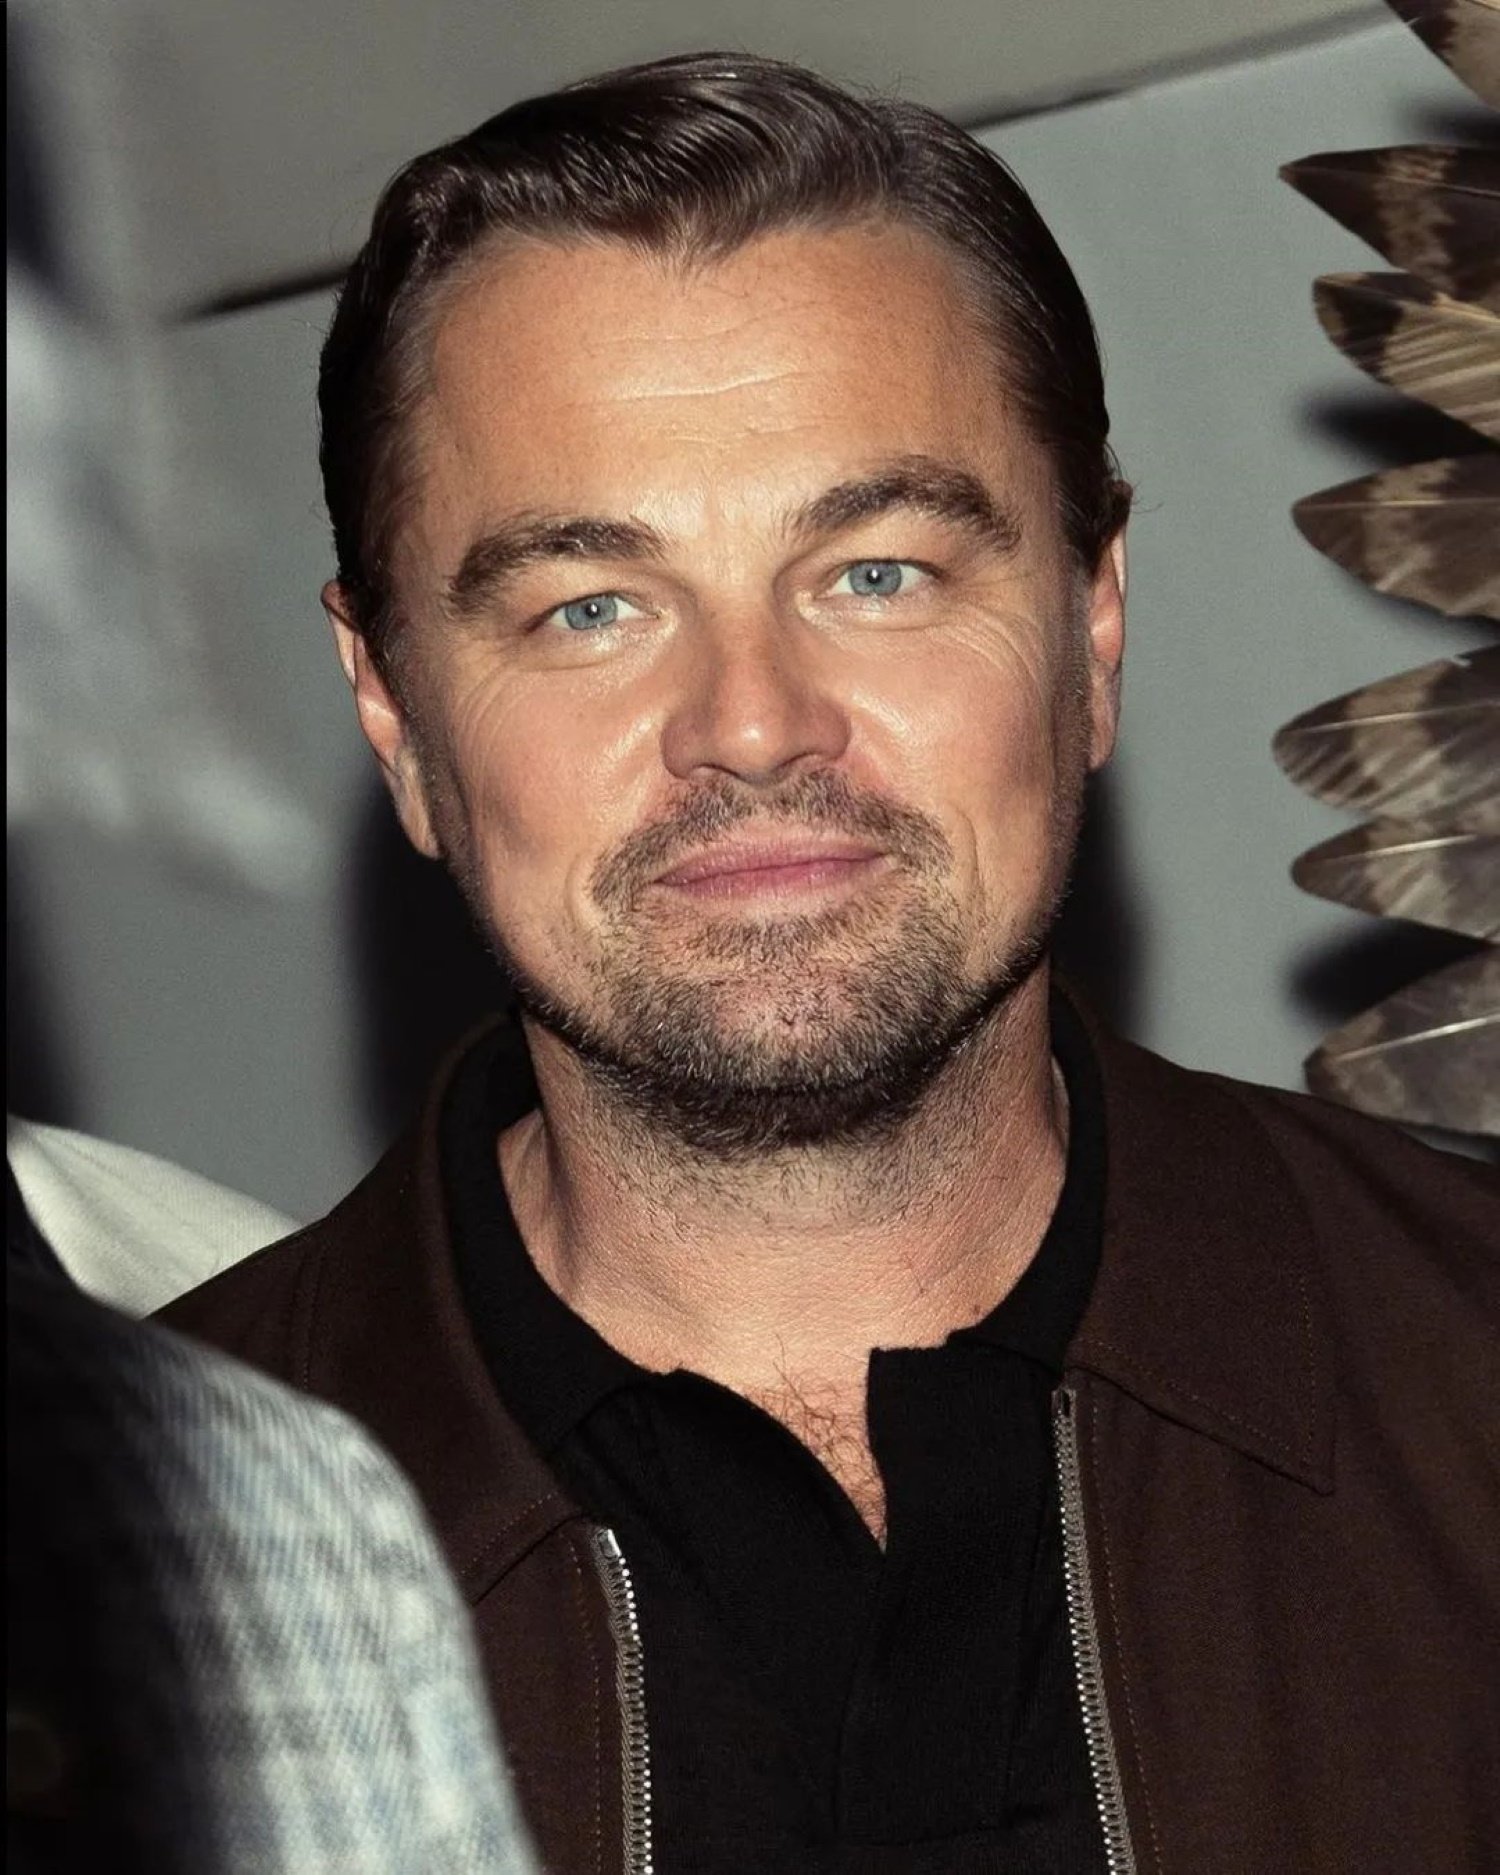 Estupor de los fans de Leonardo Di Caprio, su nueva novia es clavada a él: "Da miedo"